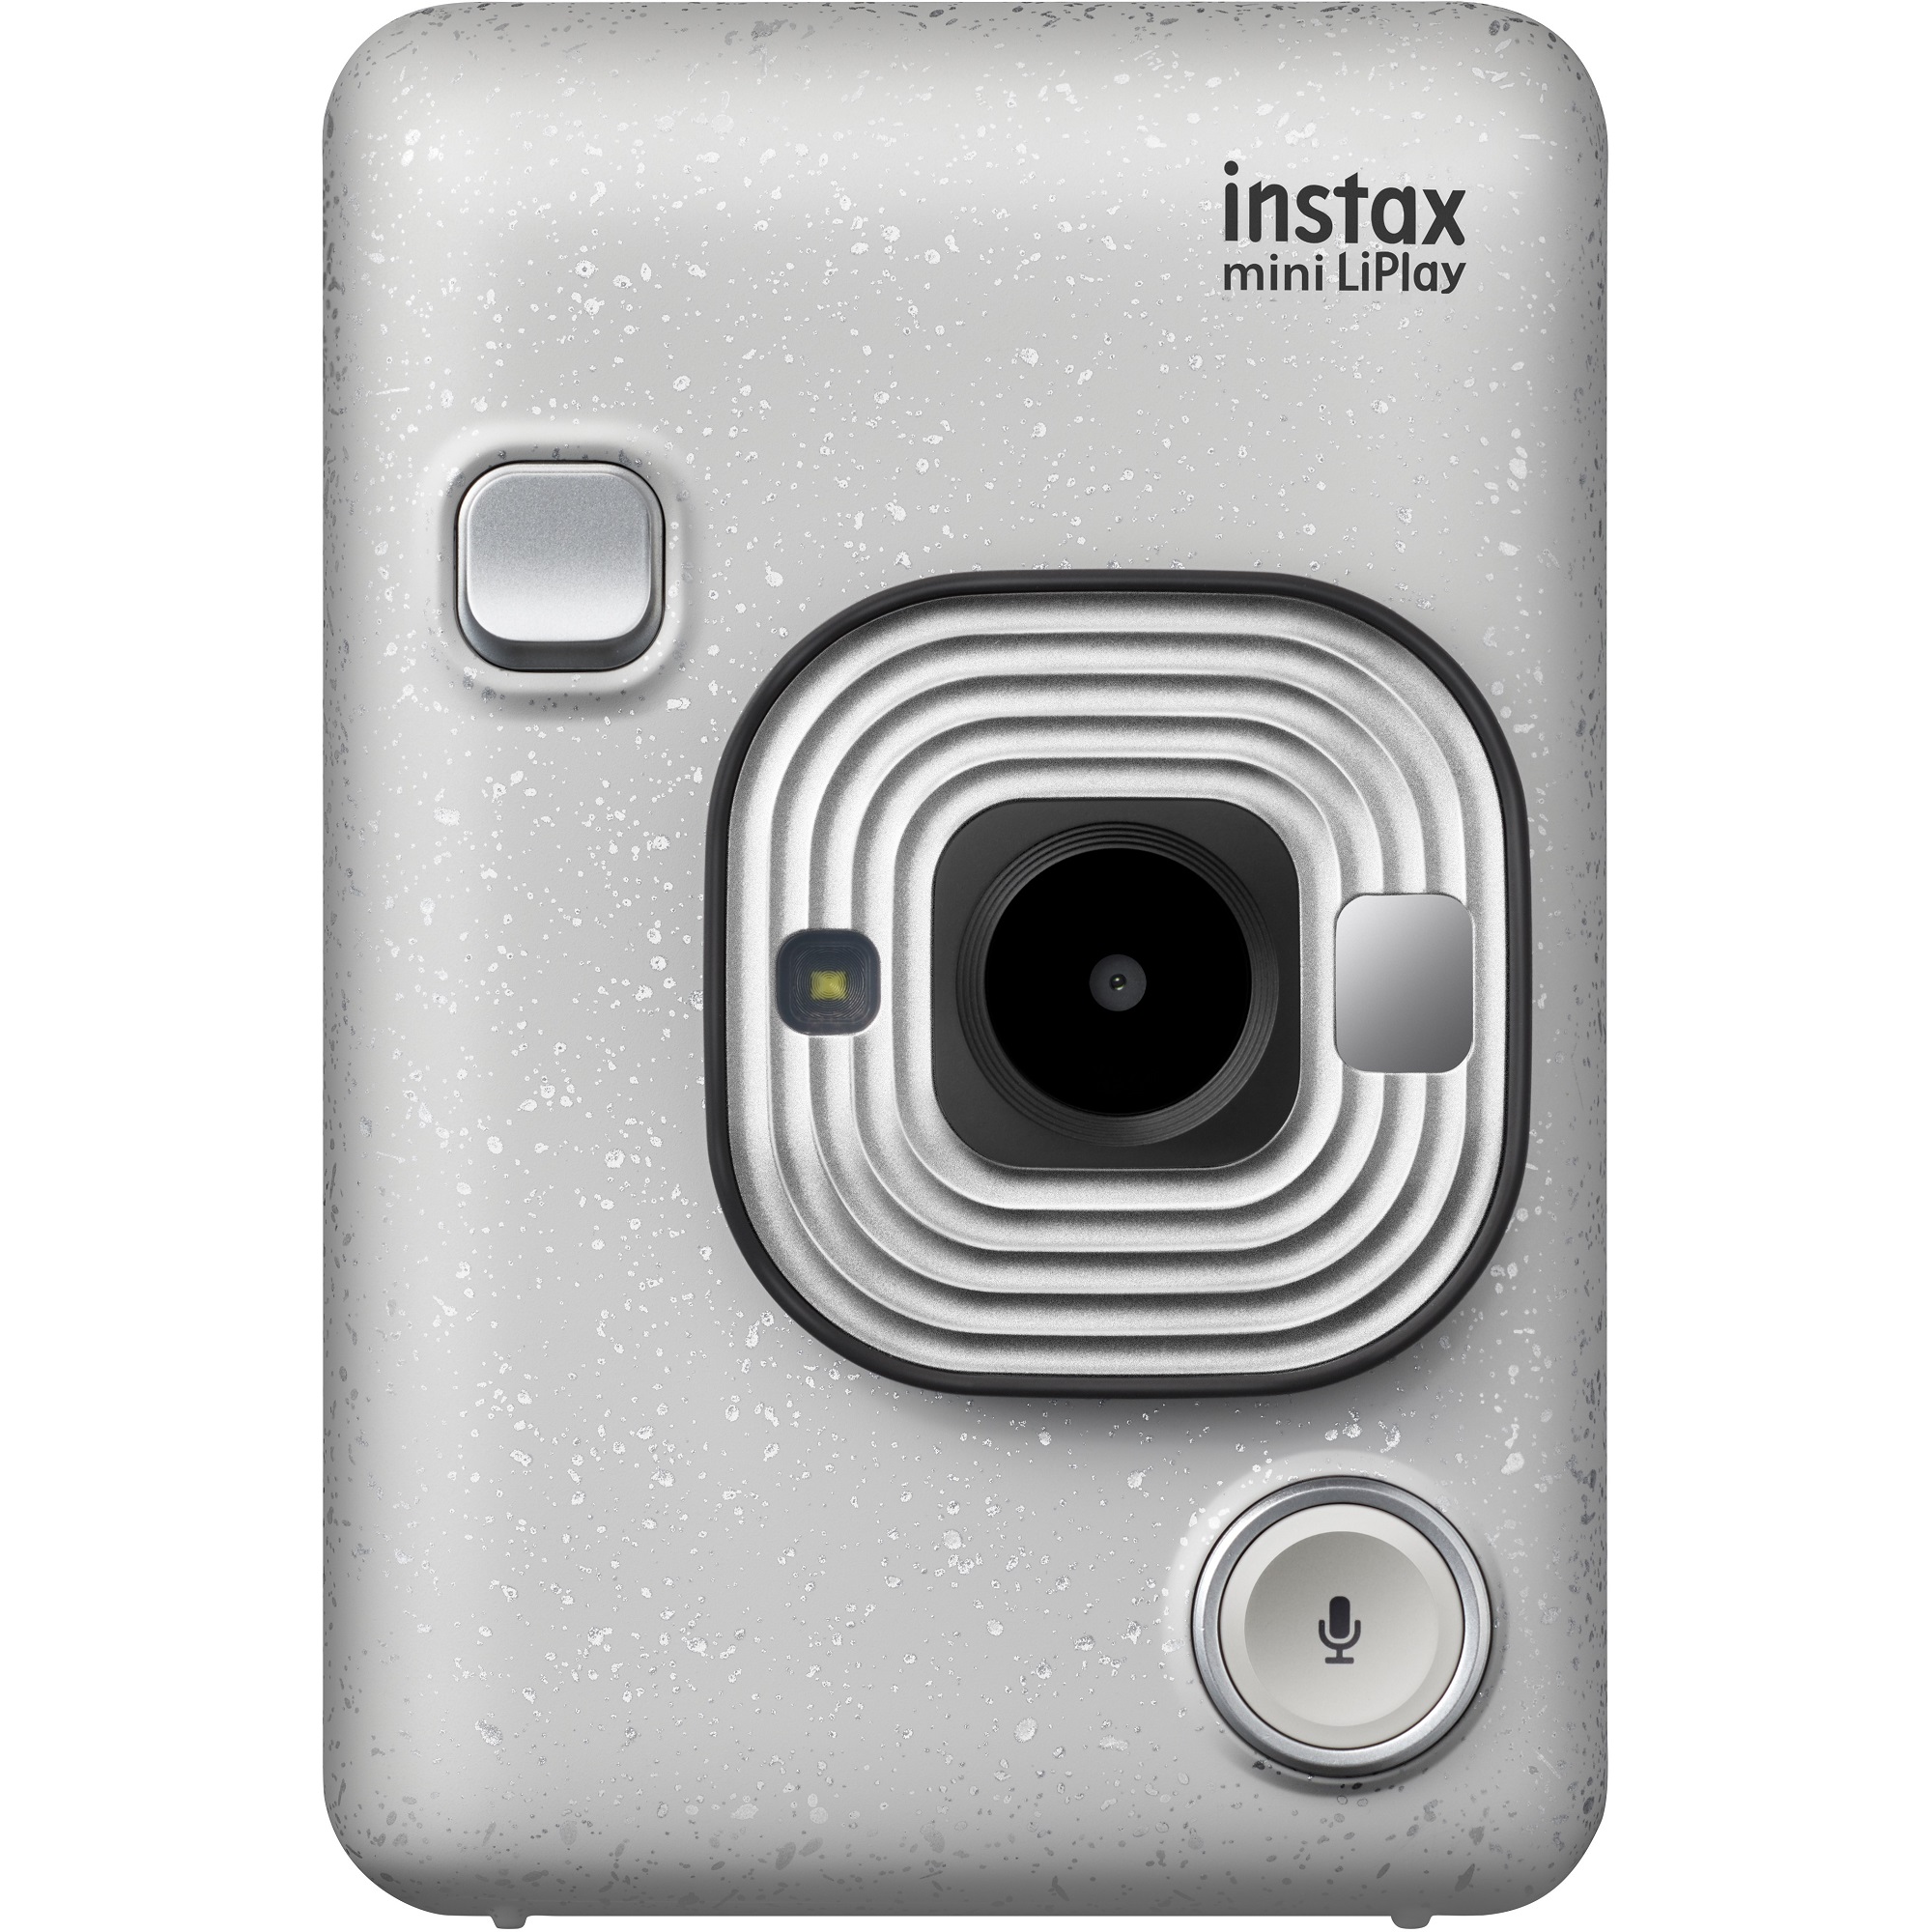 Fujifilm Instax Hybrid Mini Liplay, Stone White - image 1 of 5